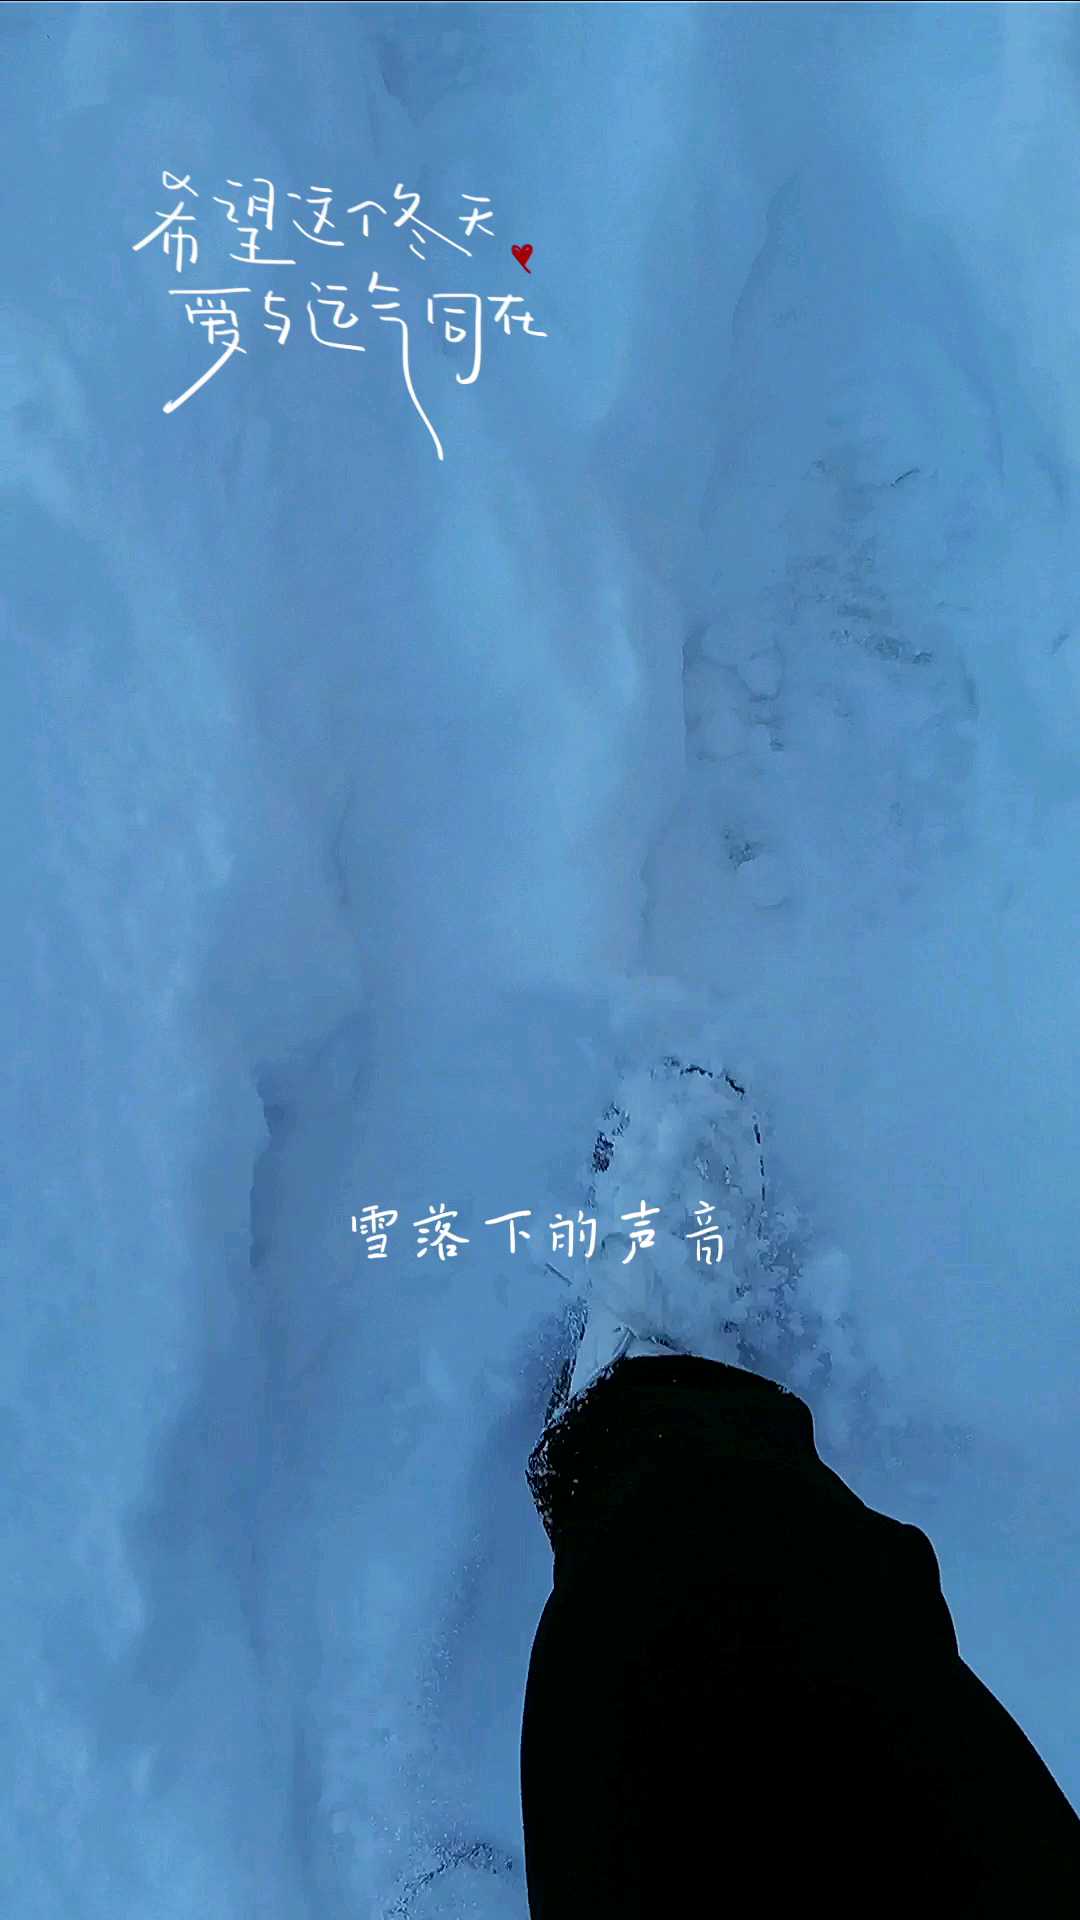 这个冬天，来少华山期待与你相遇 一起踩雪 打雪仗 看雪景 我们不是真正渴望旅行 我们不是真正渴望看山